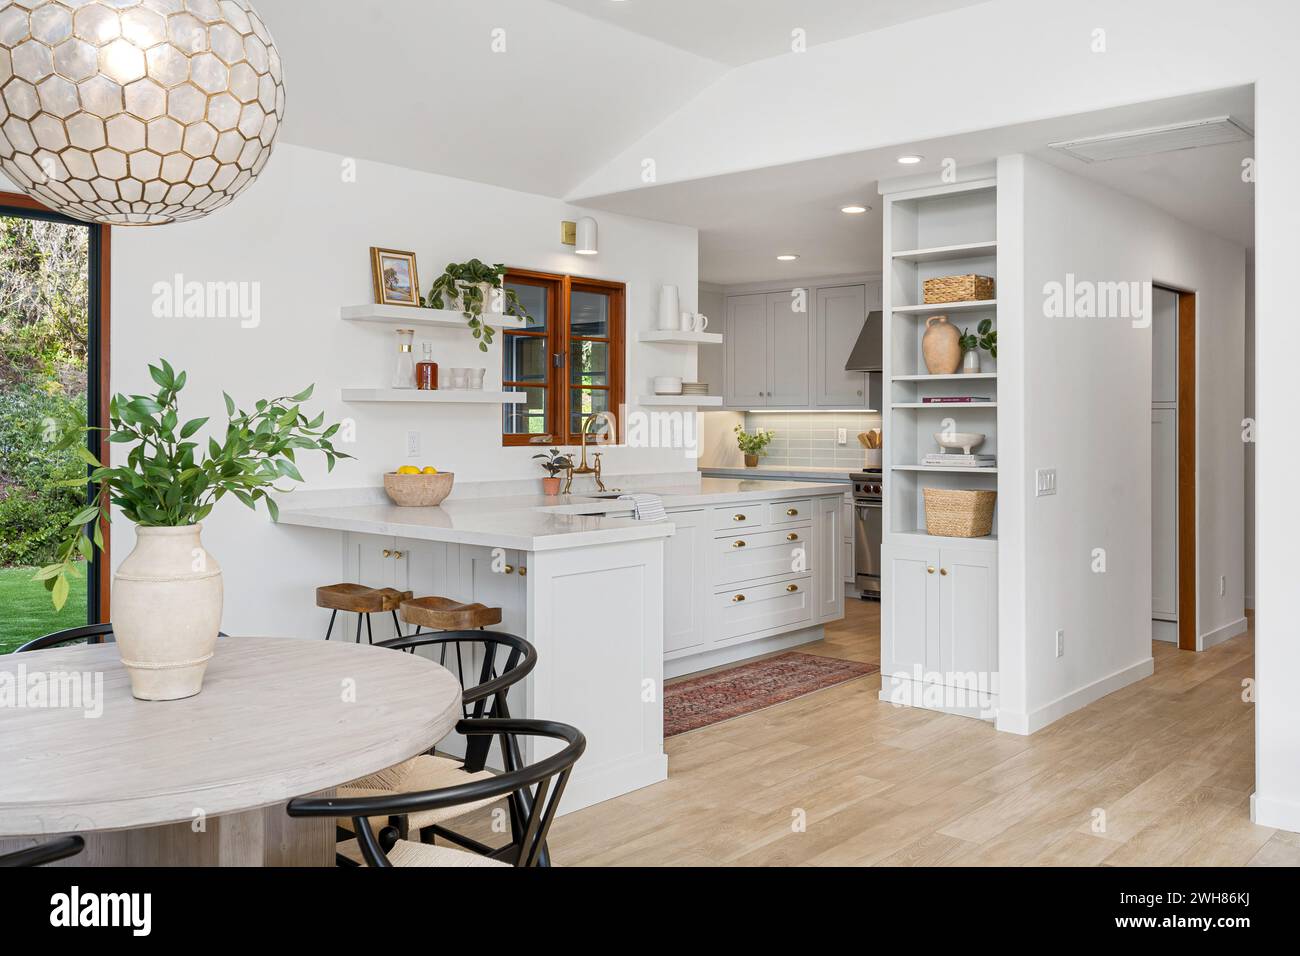 Offener Wohn- und Küchenbereich mit moderner Einrichtung Stockfoto